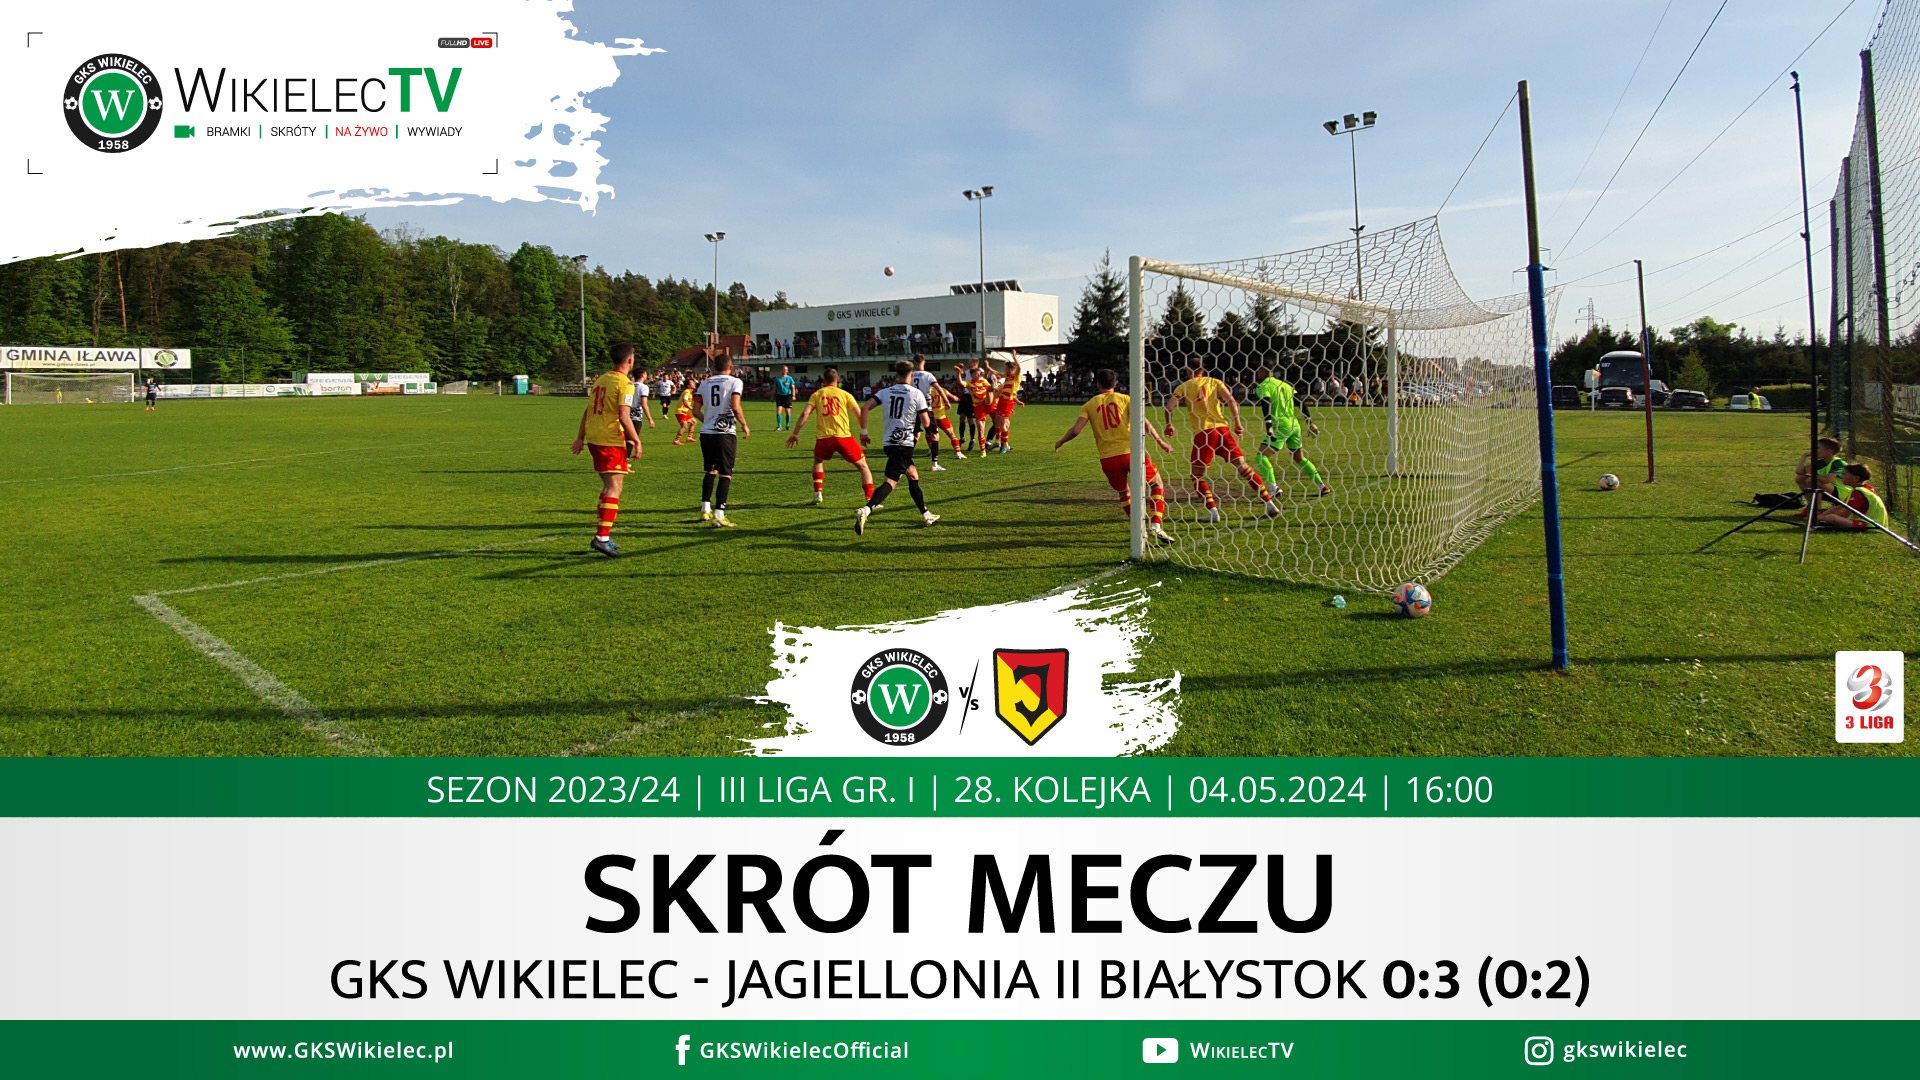 WikielecTV: Skrót meczu GKS Wikielec - Jagiellonia II Białystok 0:3 (0:2)